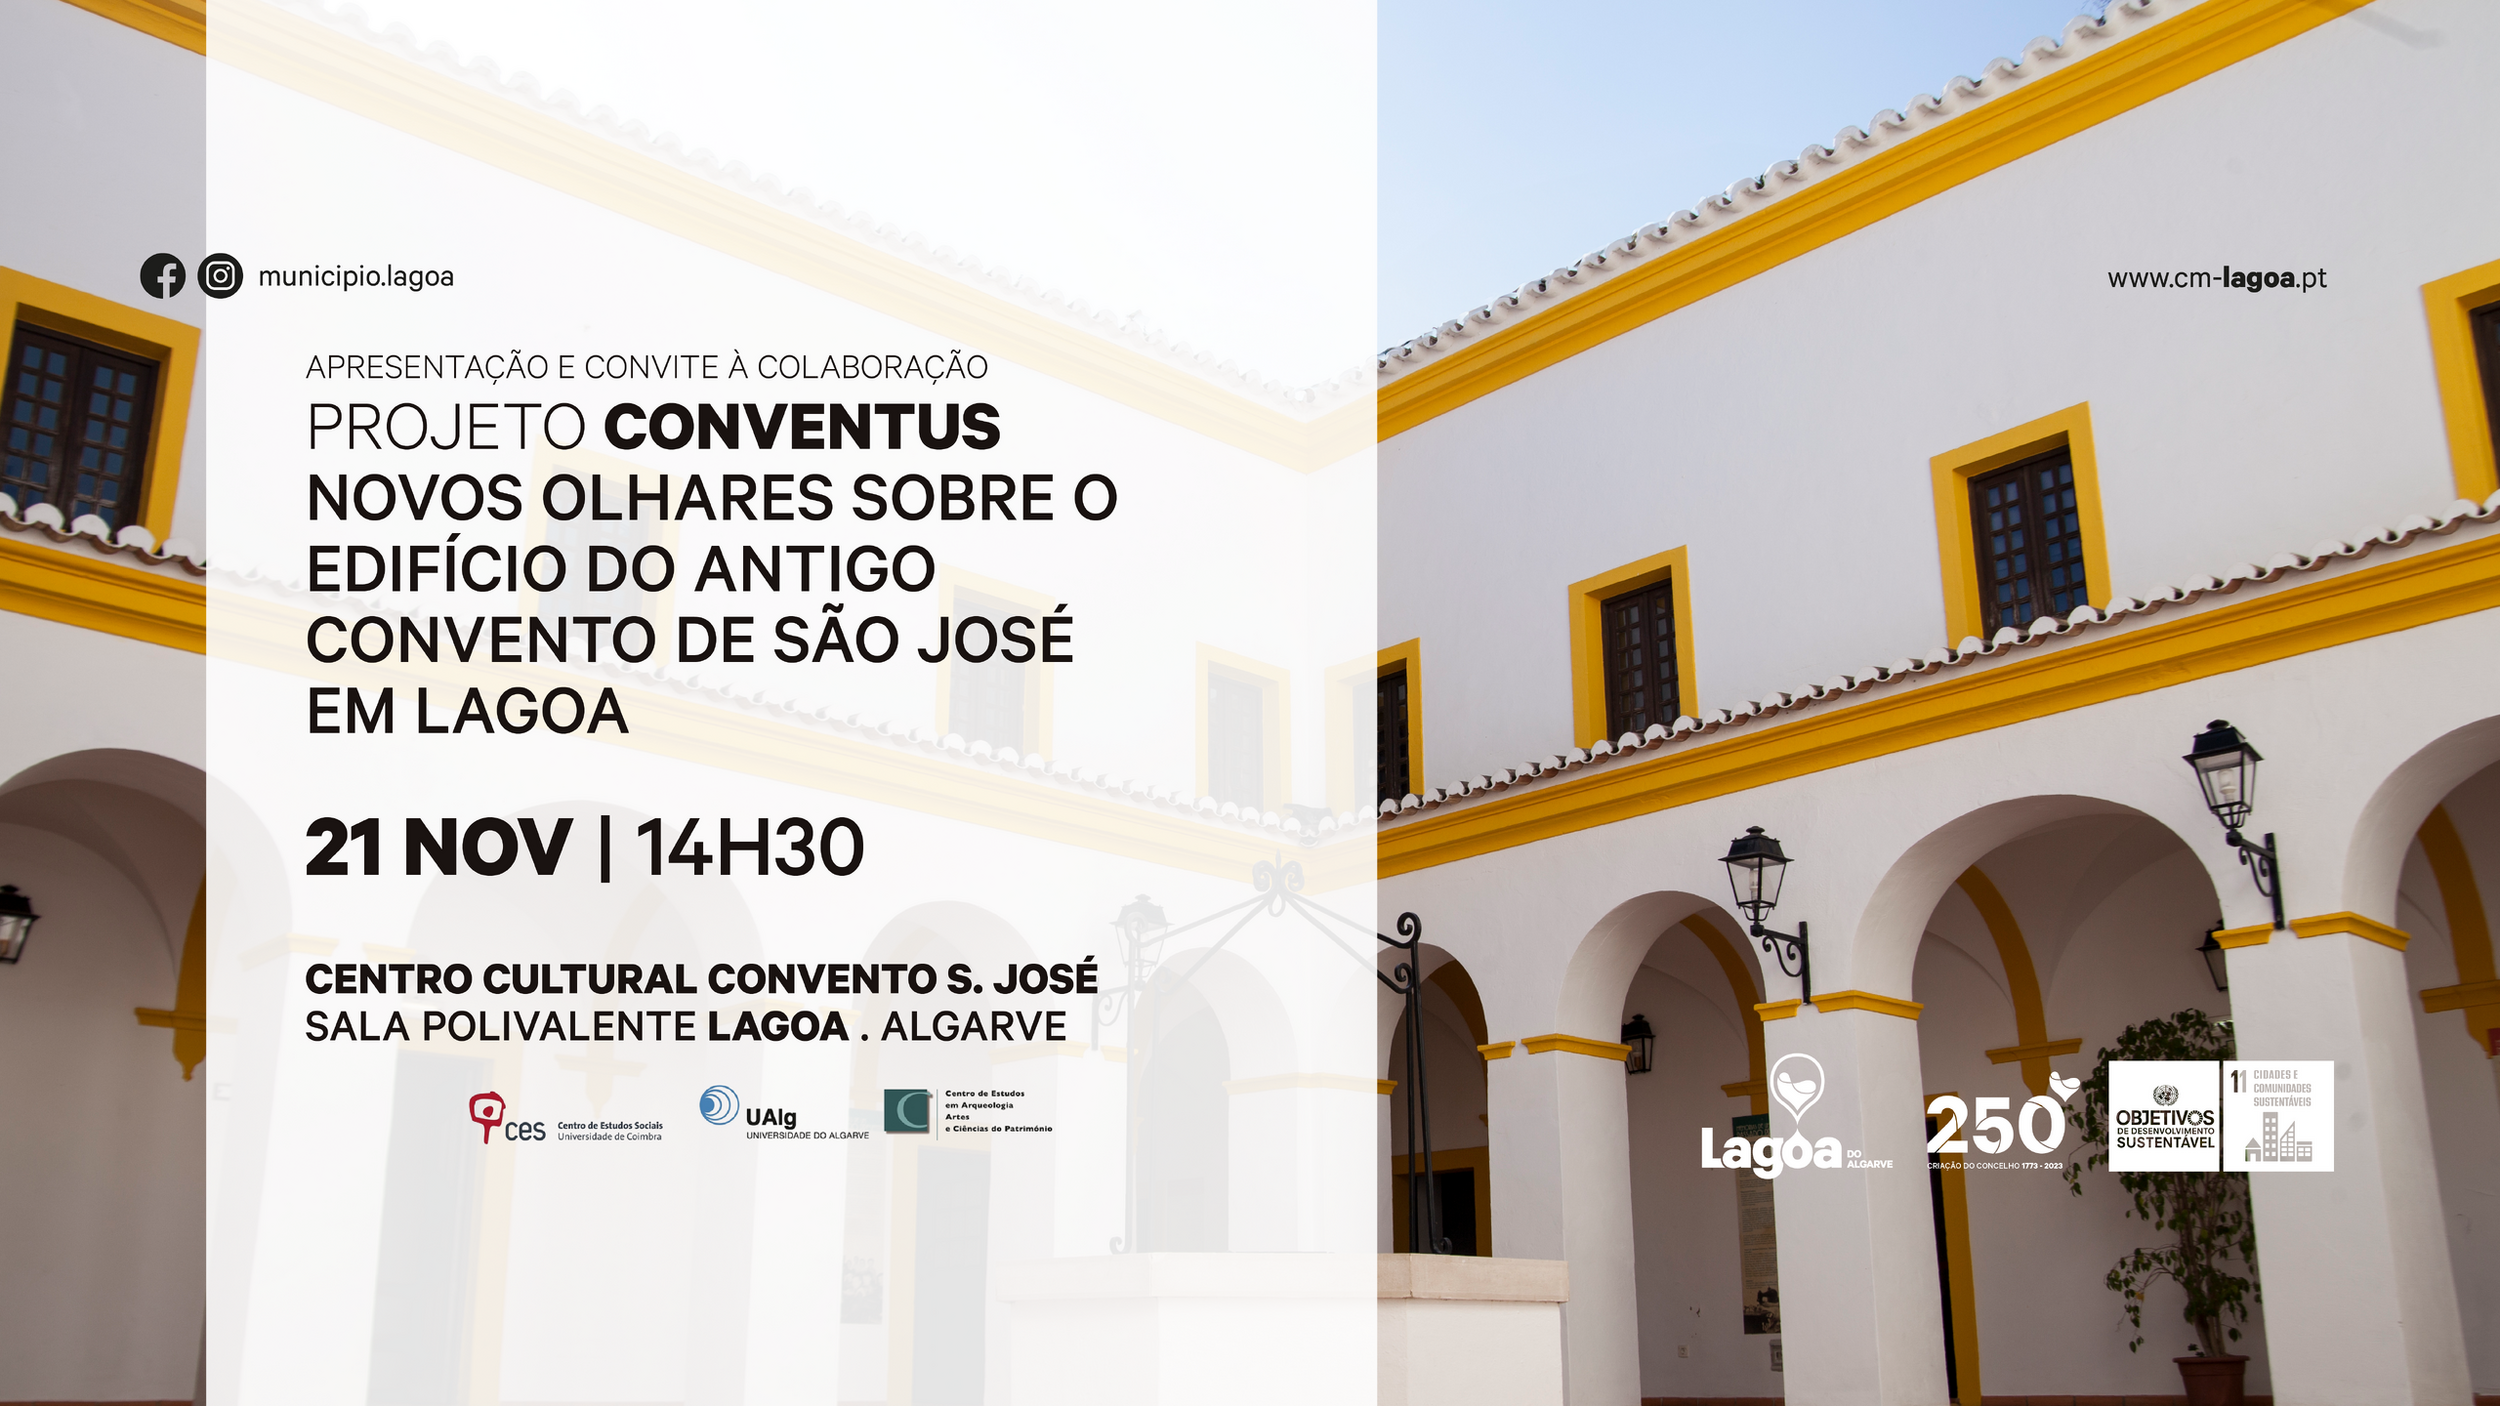 Projeto CONVENTUS: Novos olhares sobre o edifício do antigo convento de São José em Lagoa